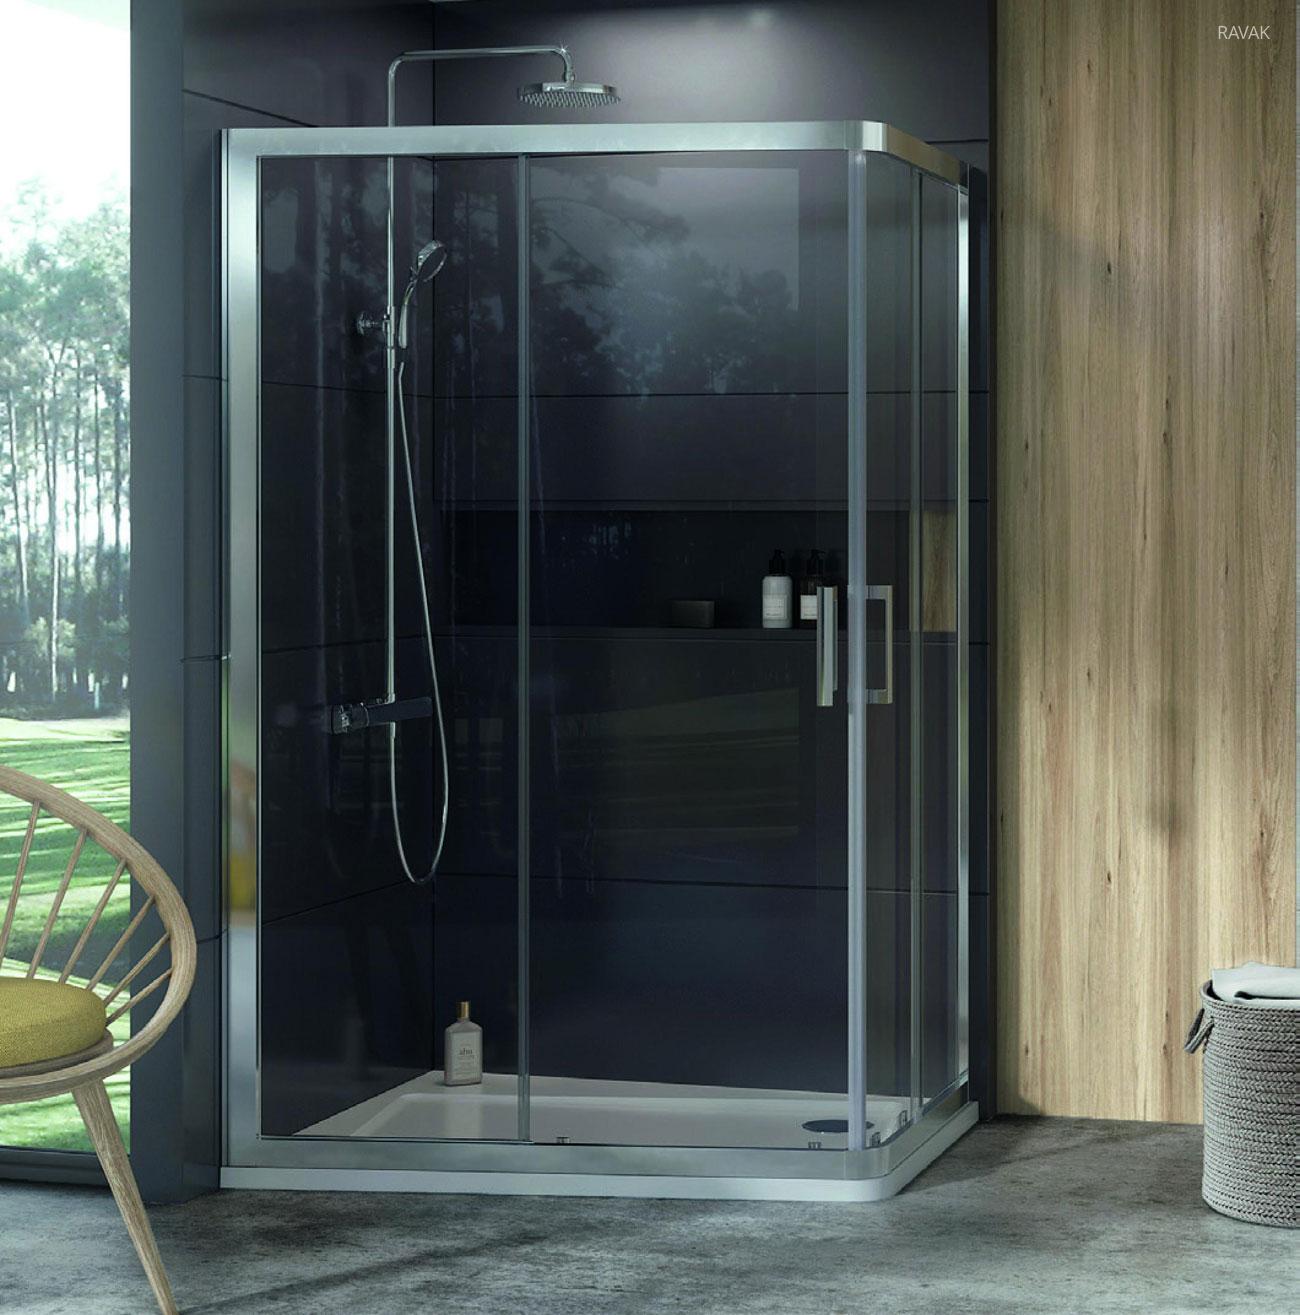 Sarokba épített zuhanyfülke - fürdő / WC ötlet, modern stílusban